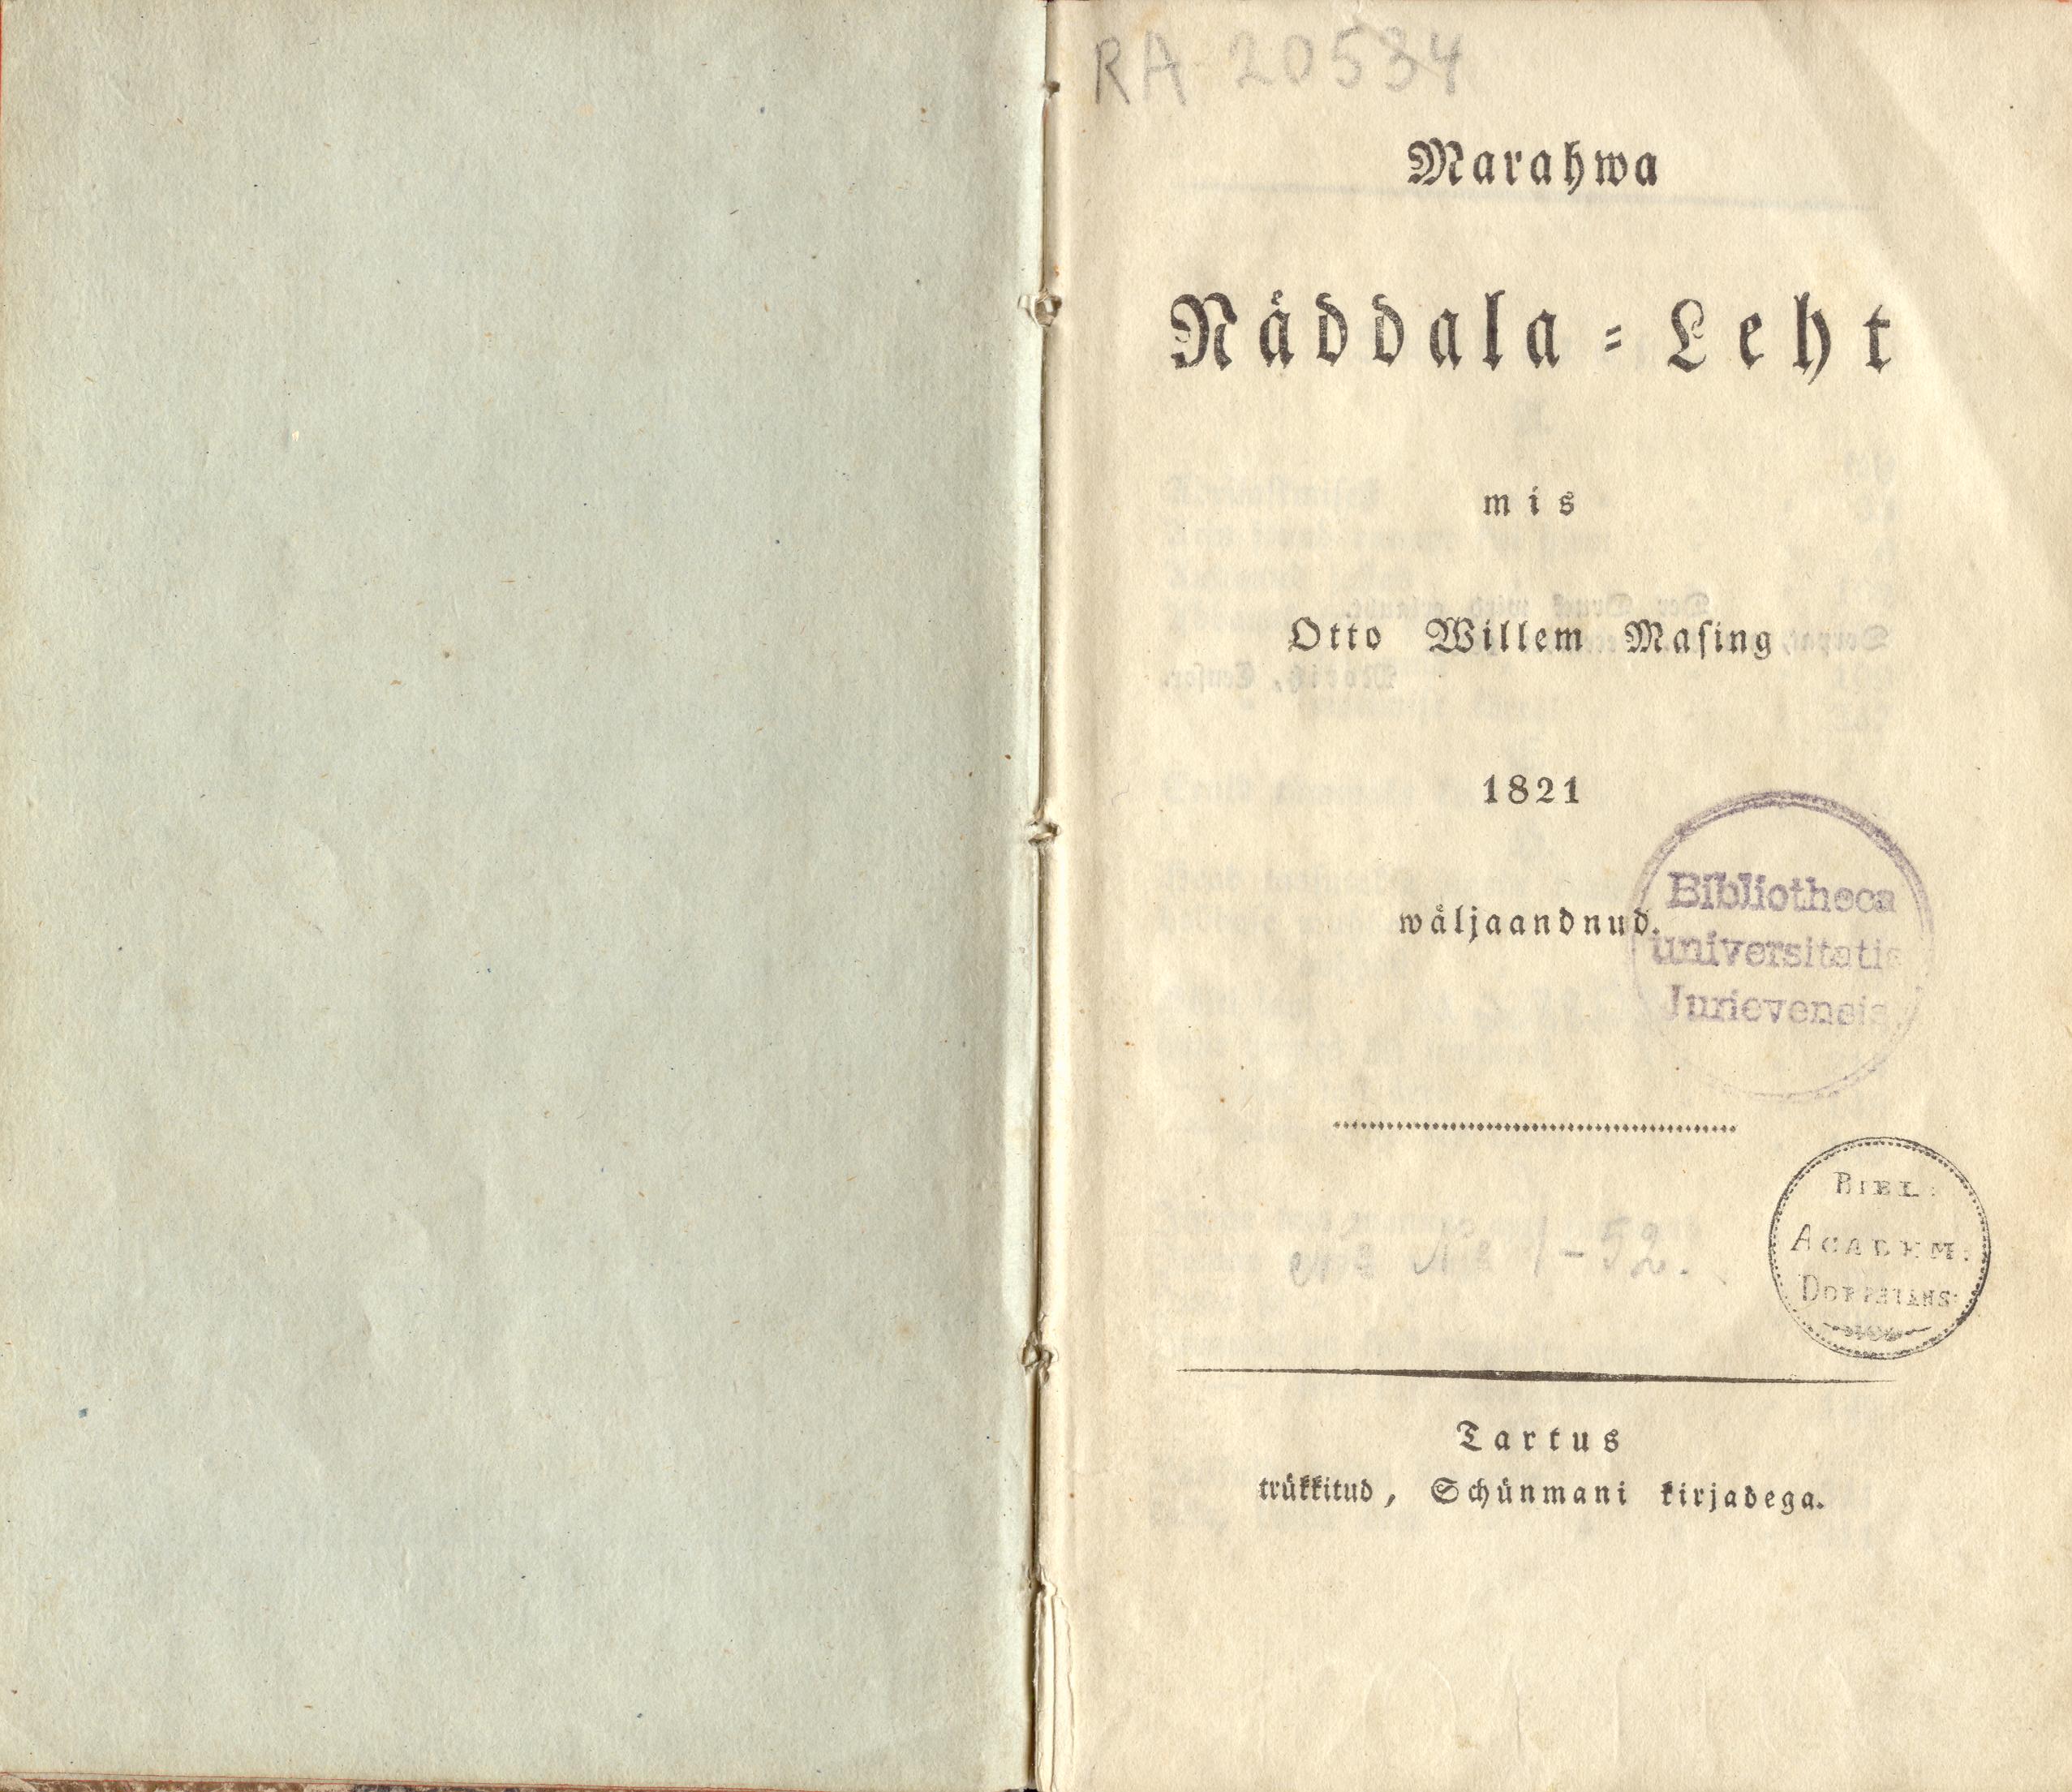 Marahwa Näddala-Leht [1] (1821) | 1. Title page